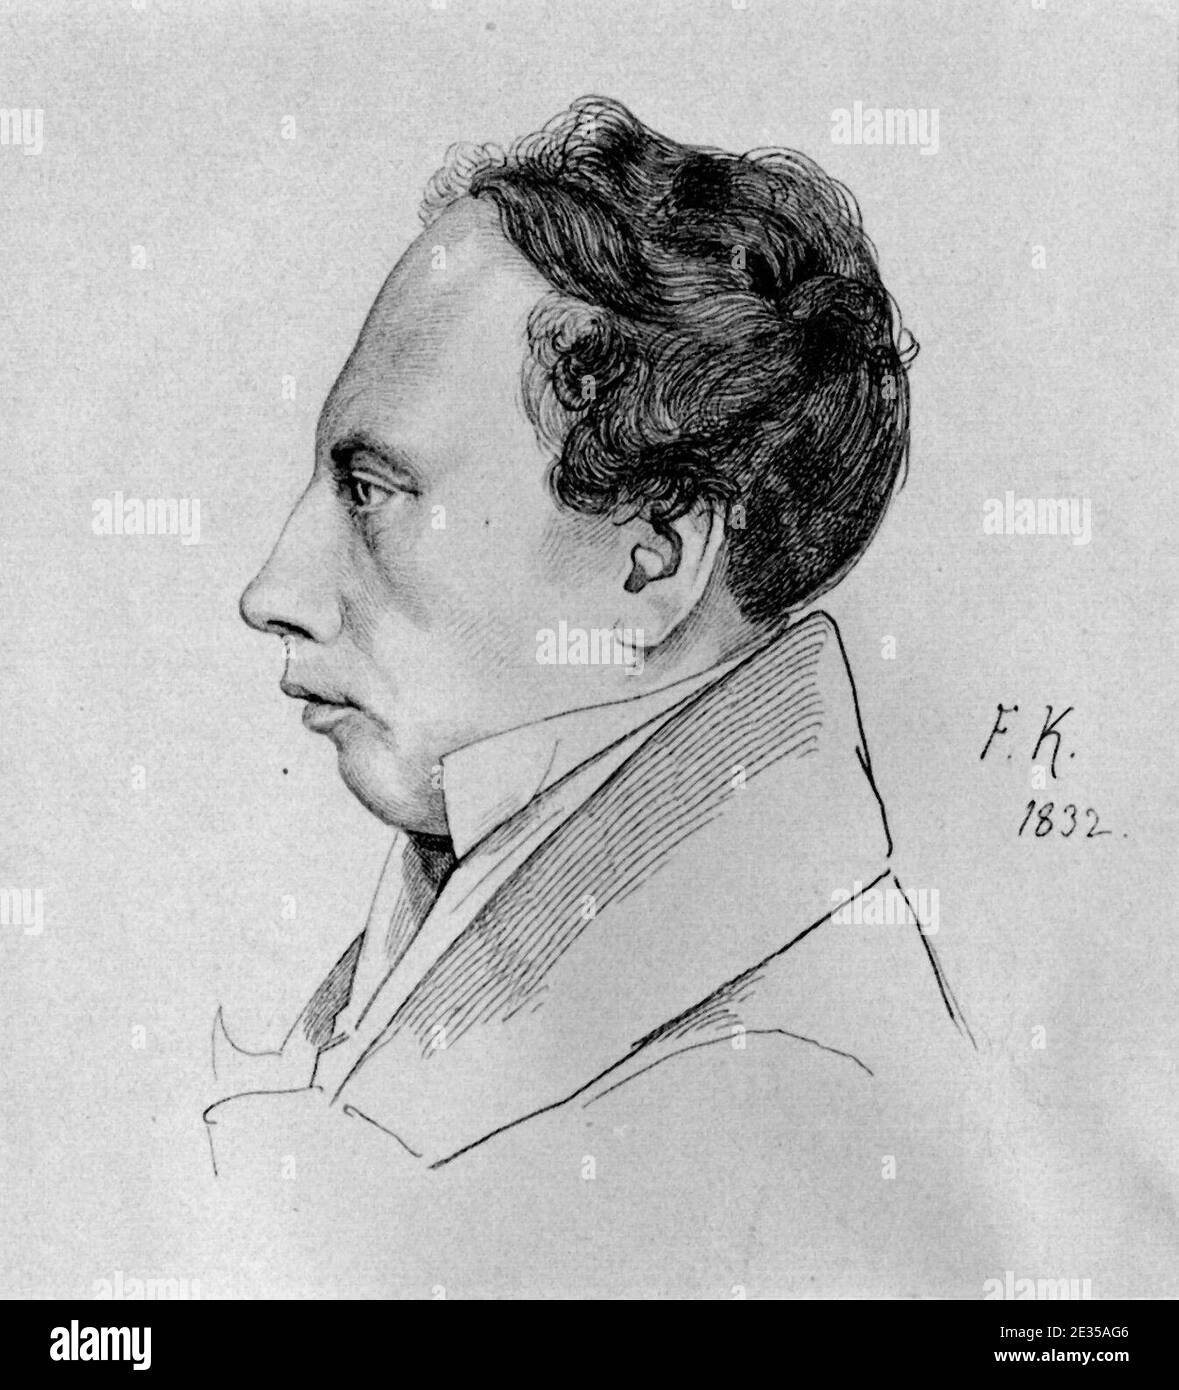 Ludwig Uhland Franz Kugler. Stock Photo